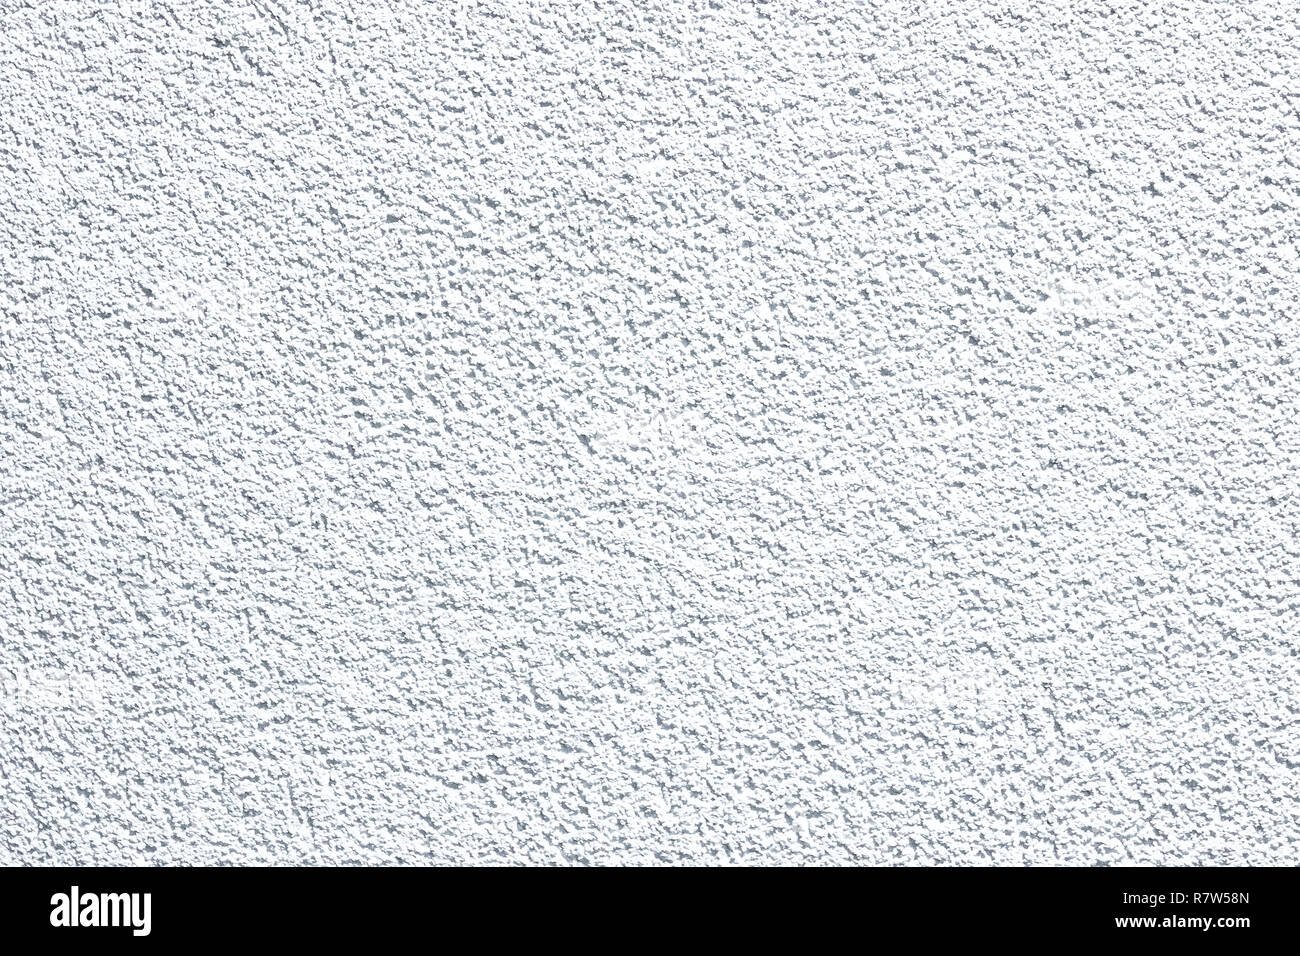 Couleur blanc texture pattern abstract background peut être utiliser comme fond d'écran de veille ou de la page de garde pour la saison d'hiver ou de noël fond de carte de Fes Banque D'Images